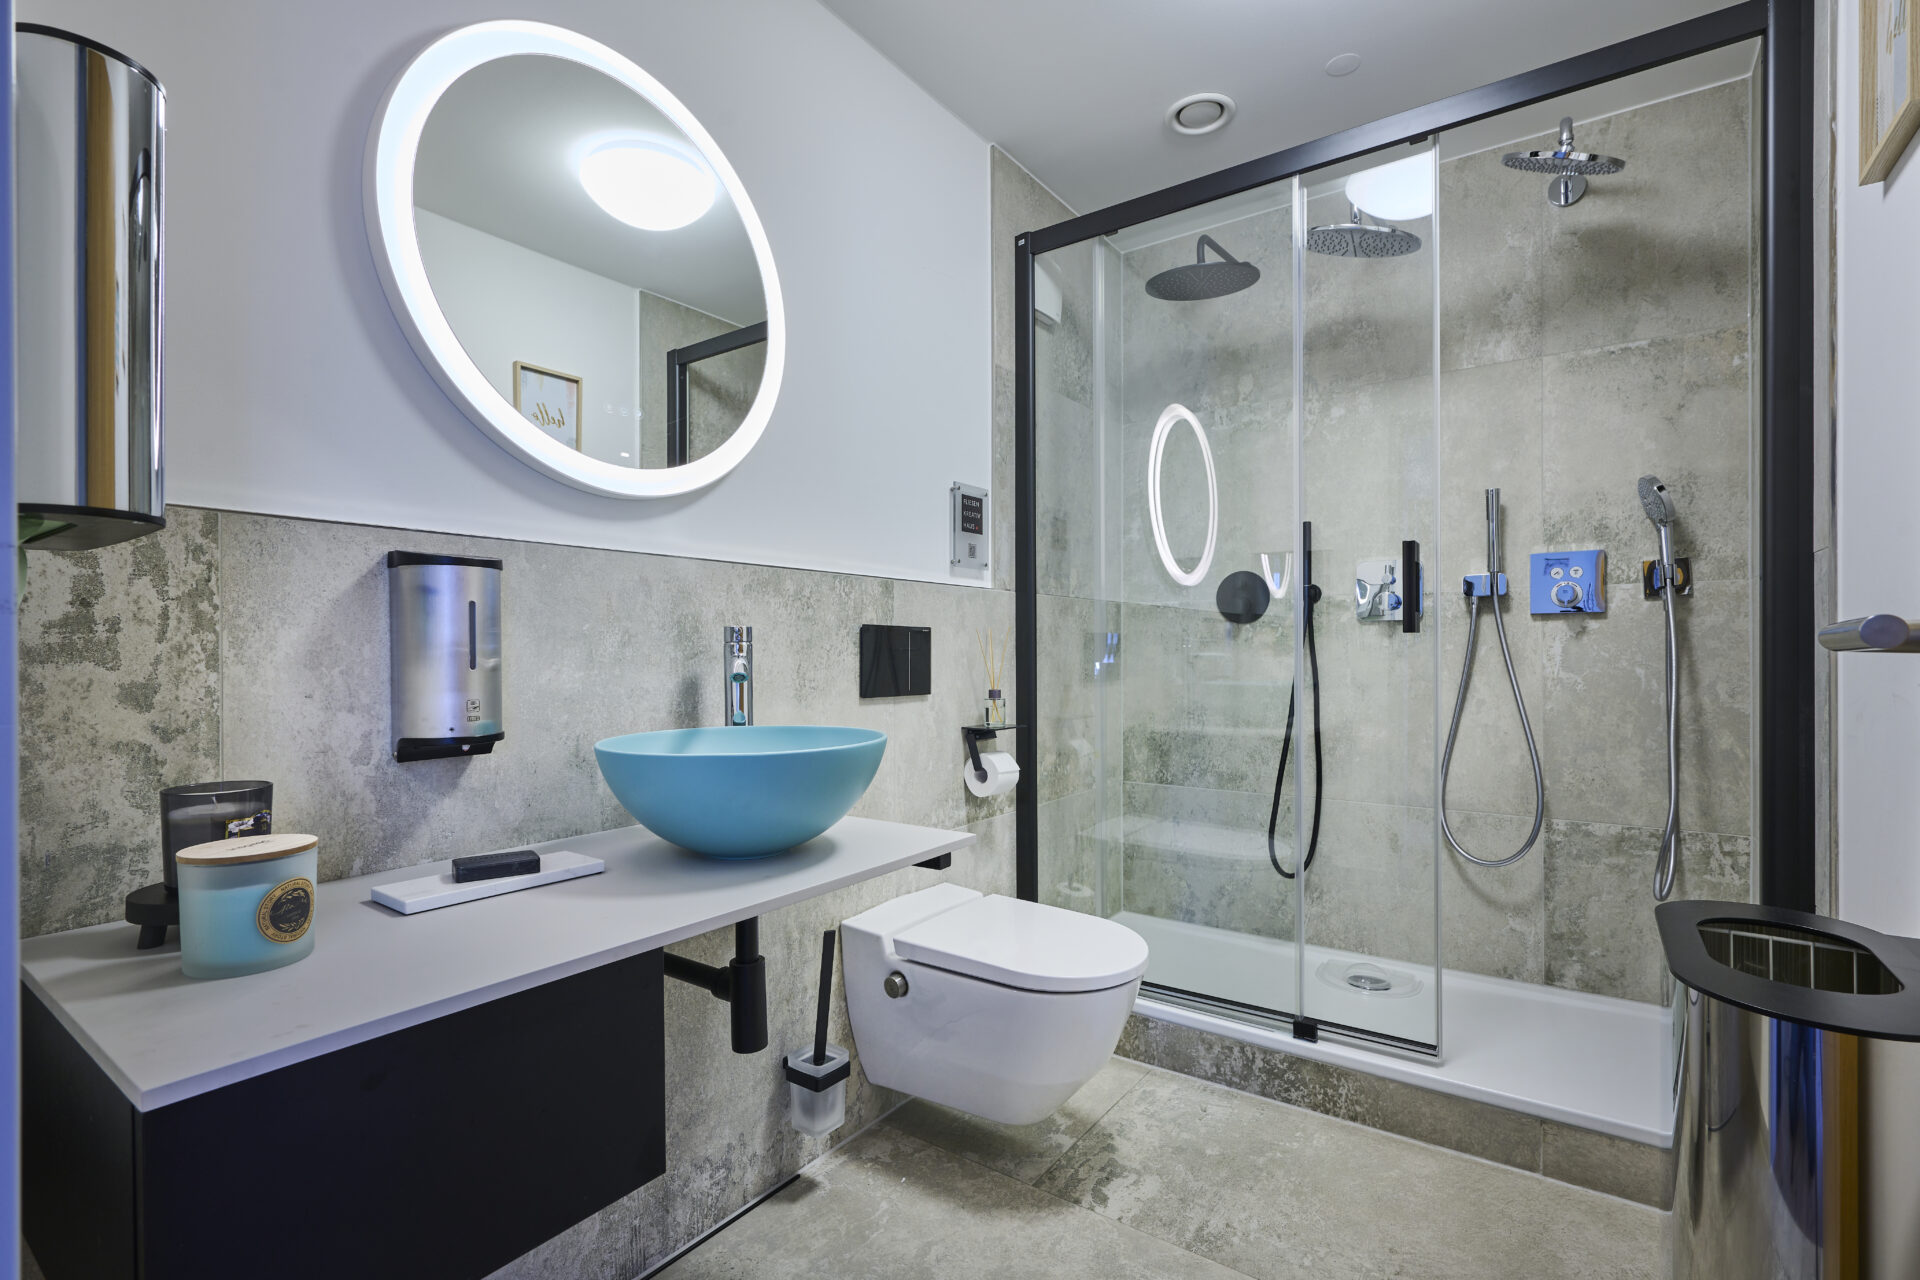 Ausstellung eines Bades - Duschkabine mit Glasfronten, einer Toilette und einem Waschtisch inkl. Spiegel